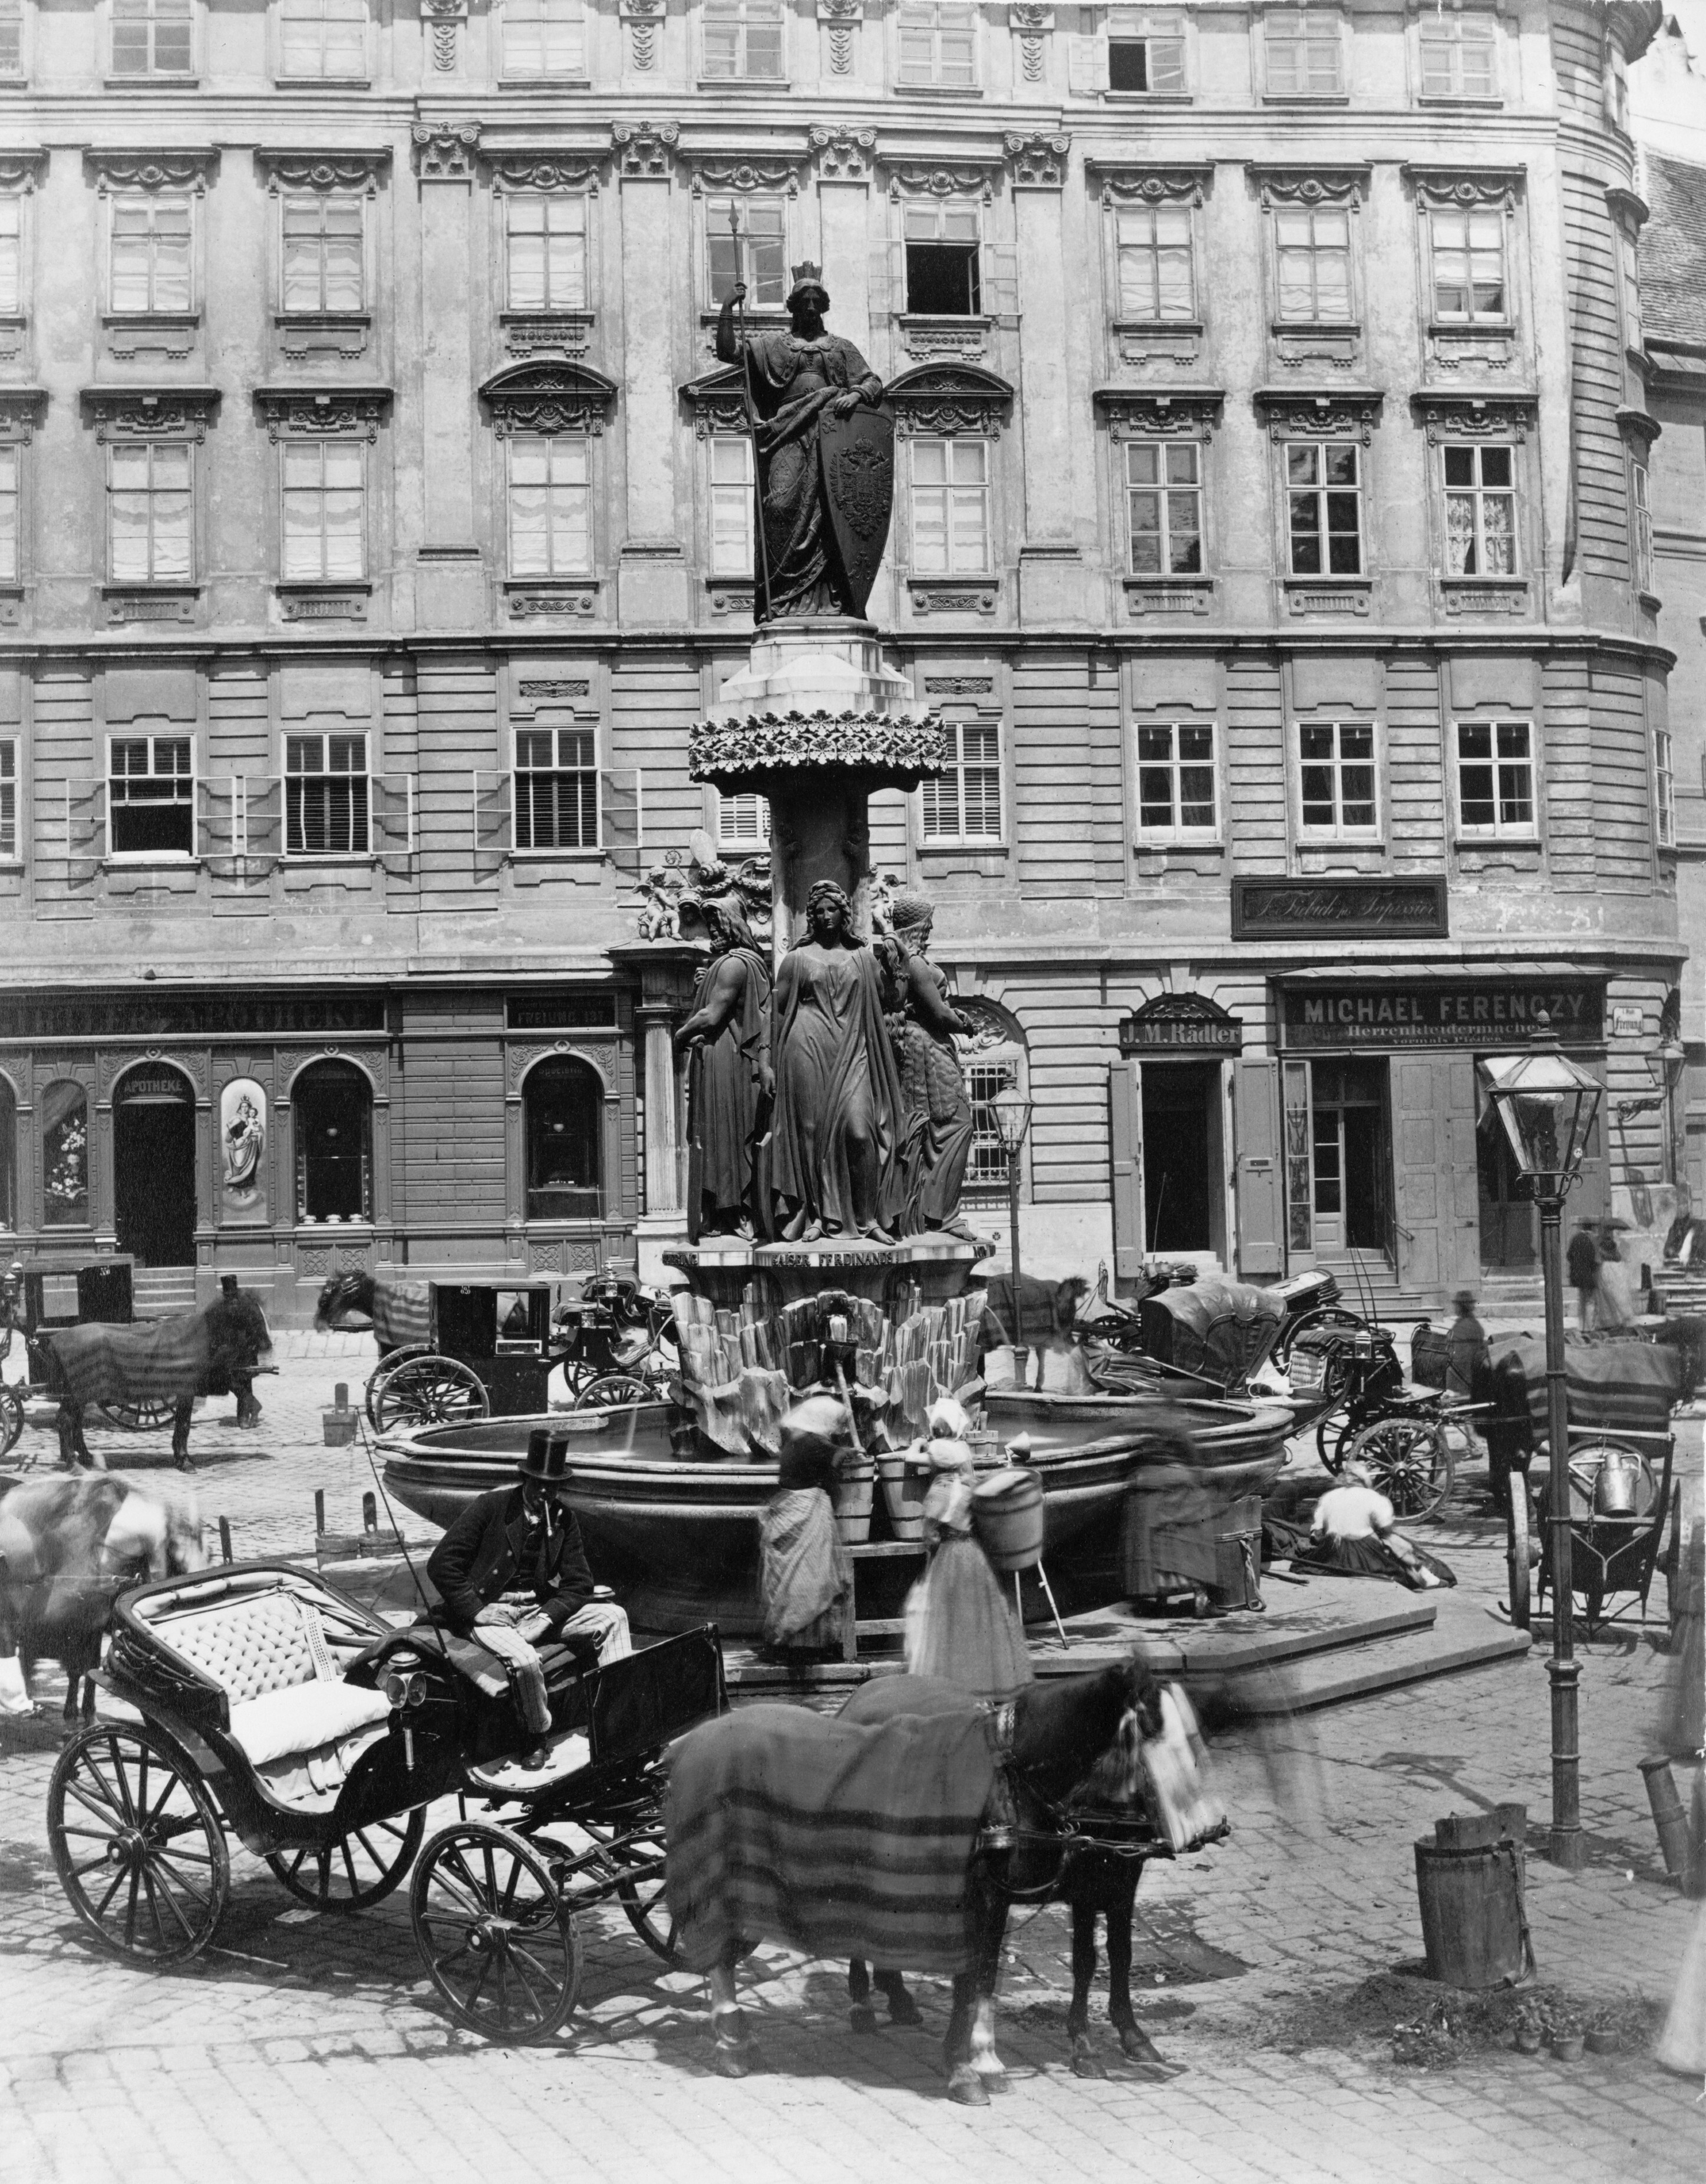 Конный экипаж возле фонтана на площади Фрайунг, Вена, Австрия, 1860 – 1890